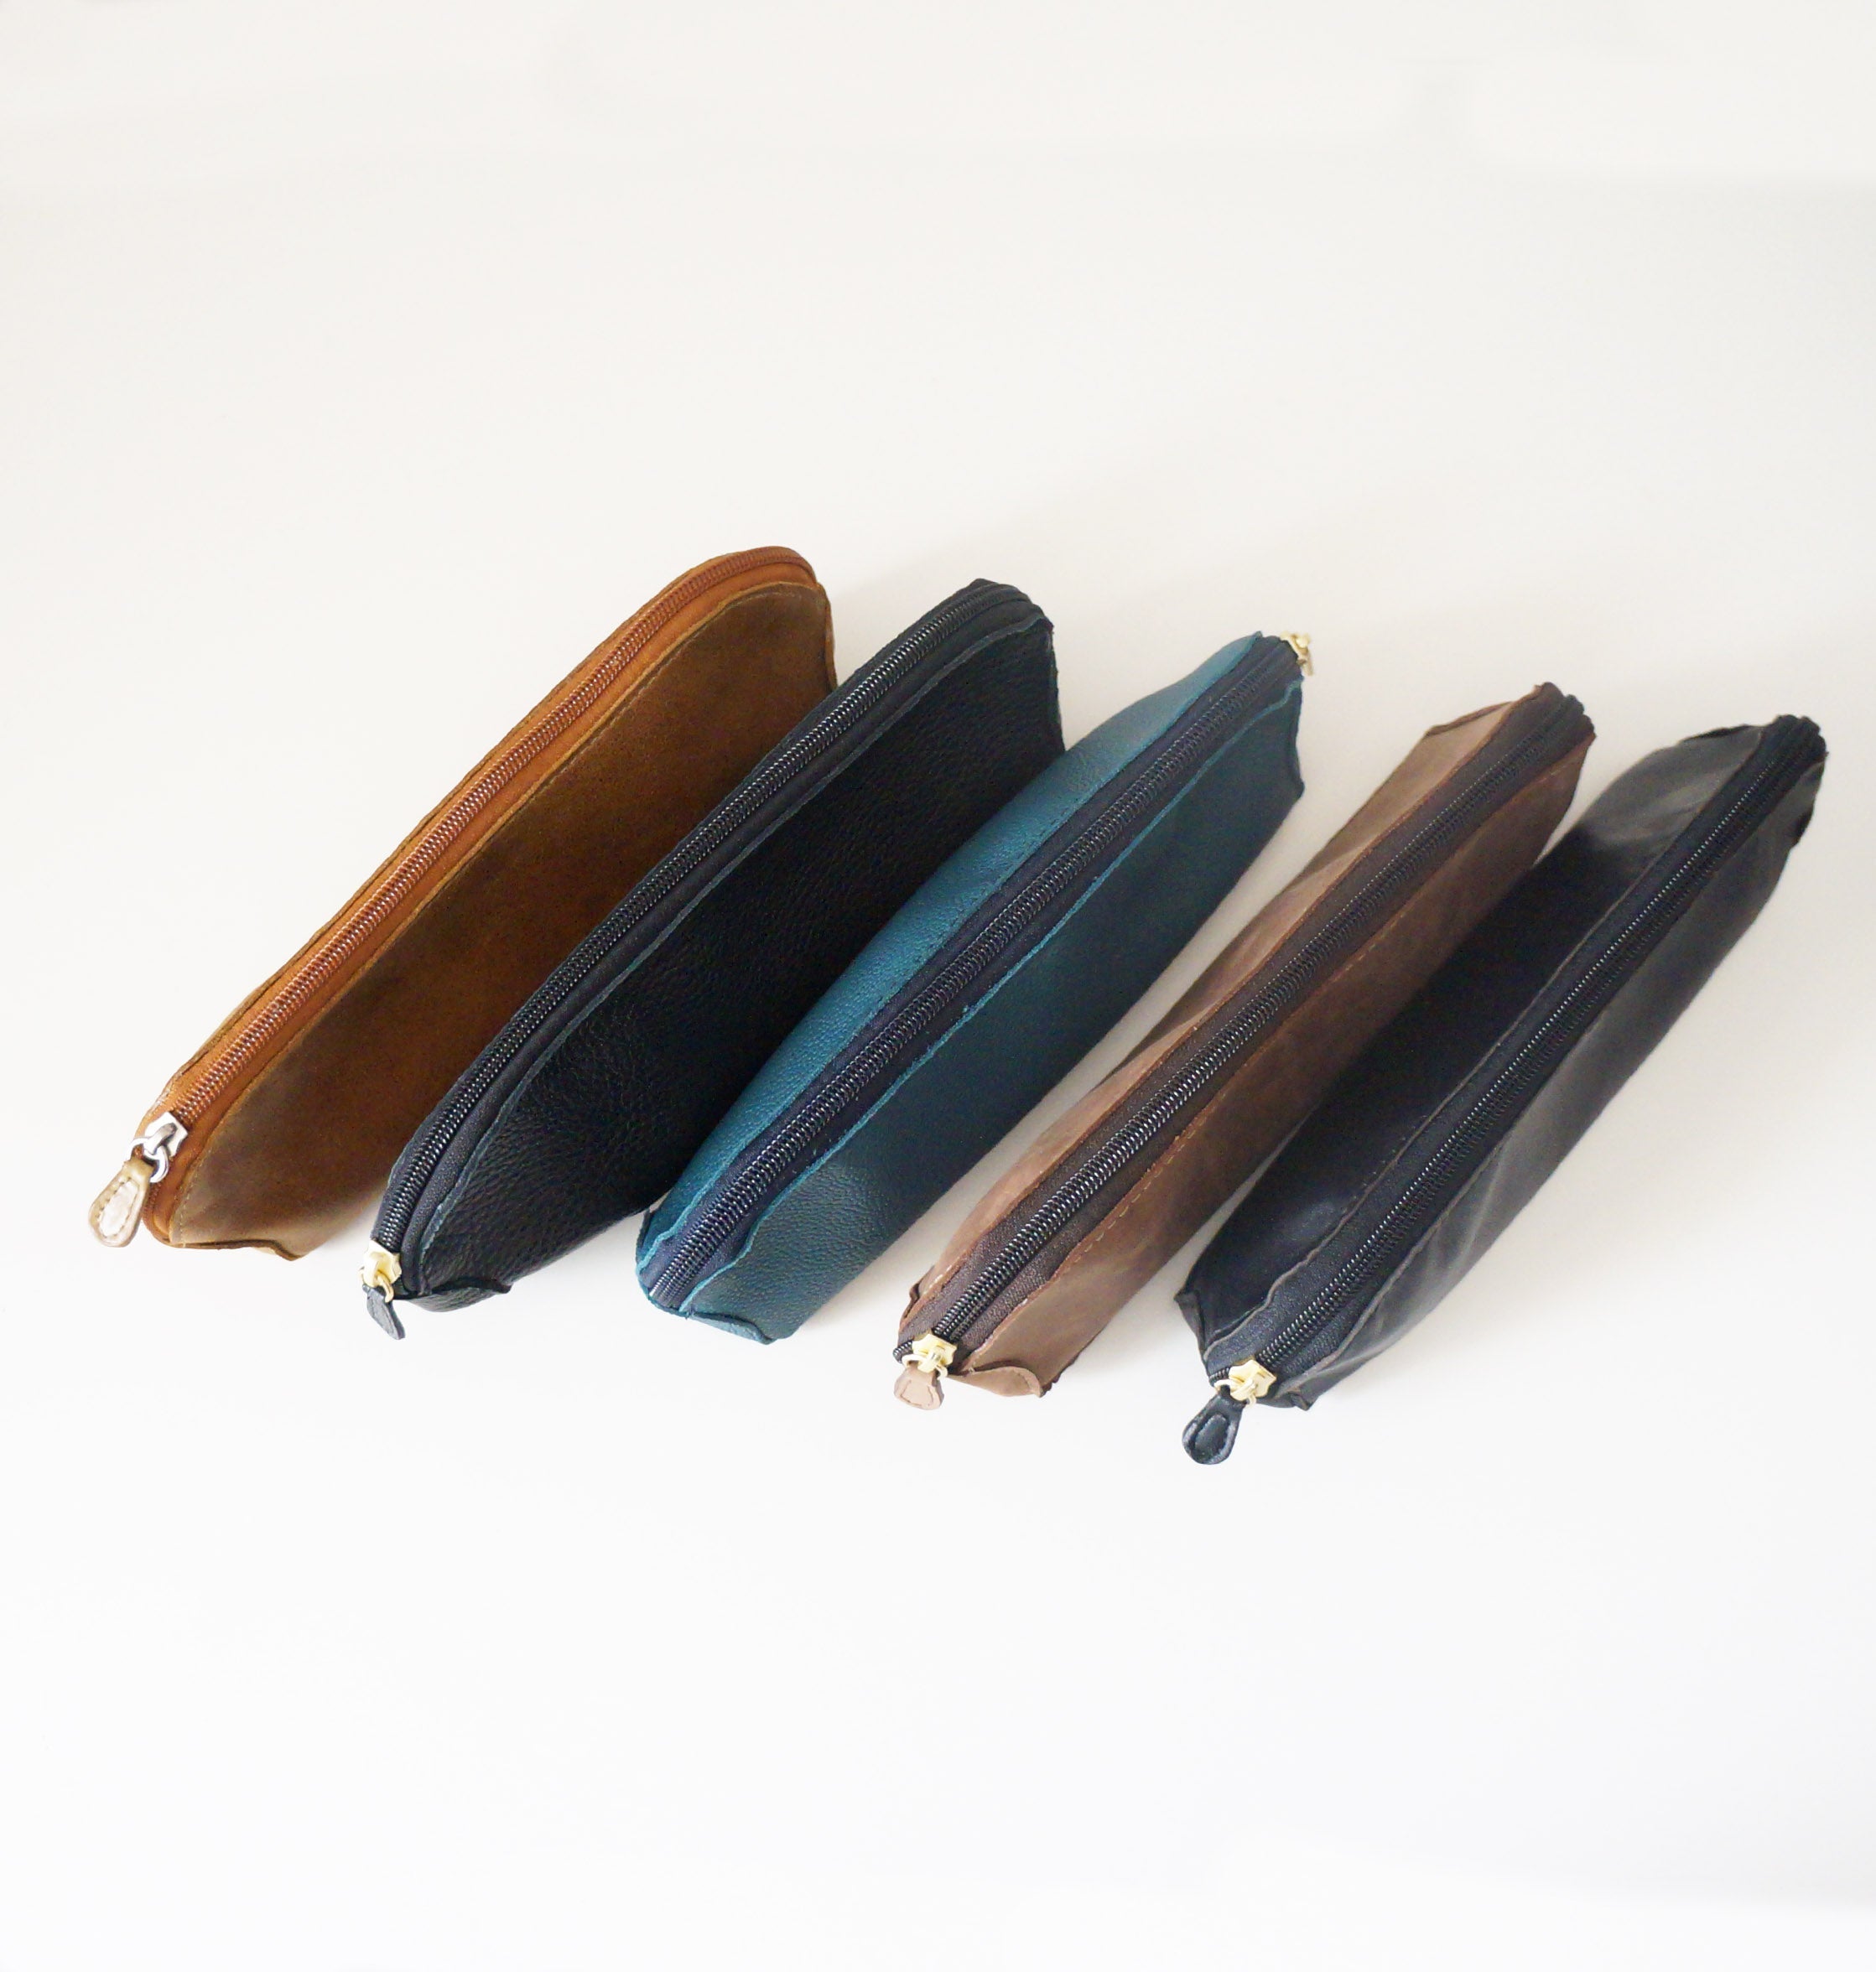 Pen Pouch/Case - Choose your leather